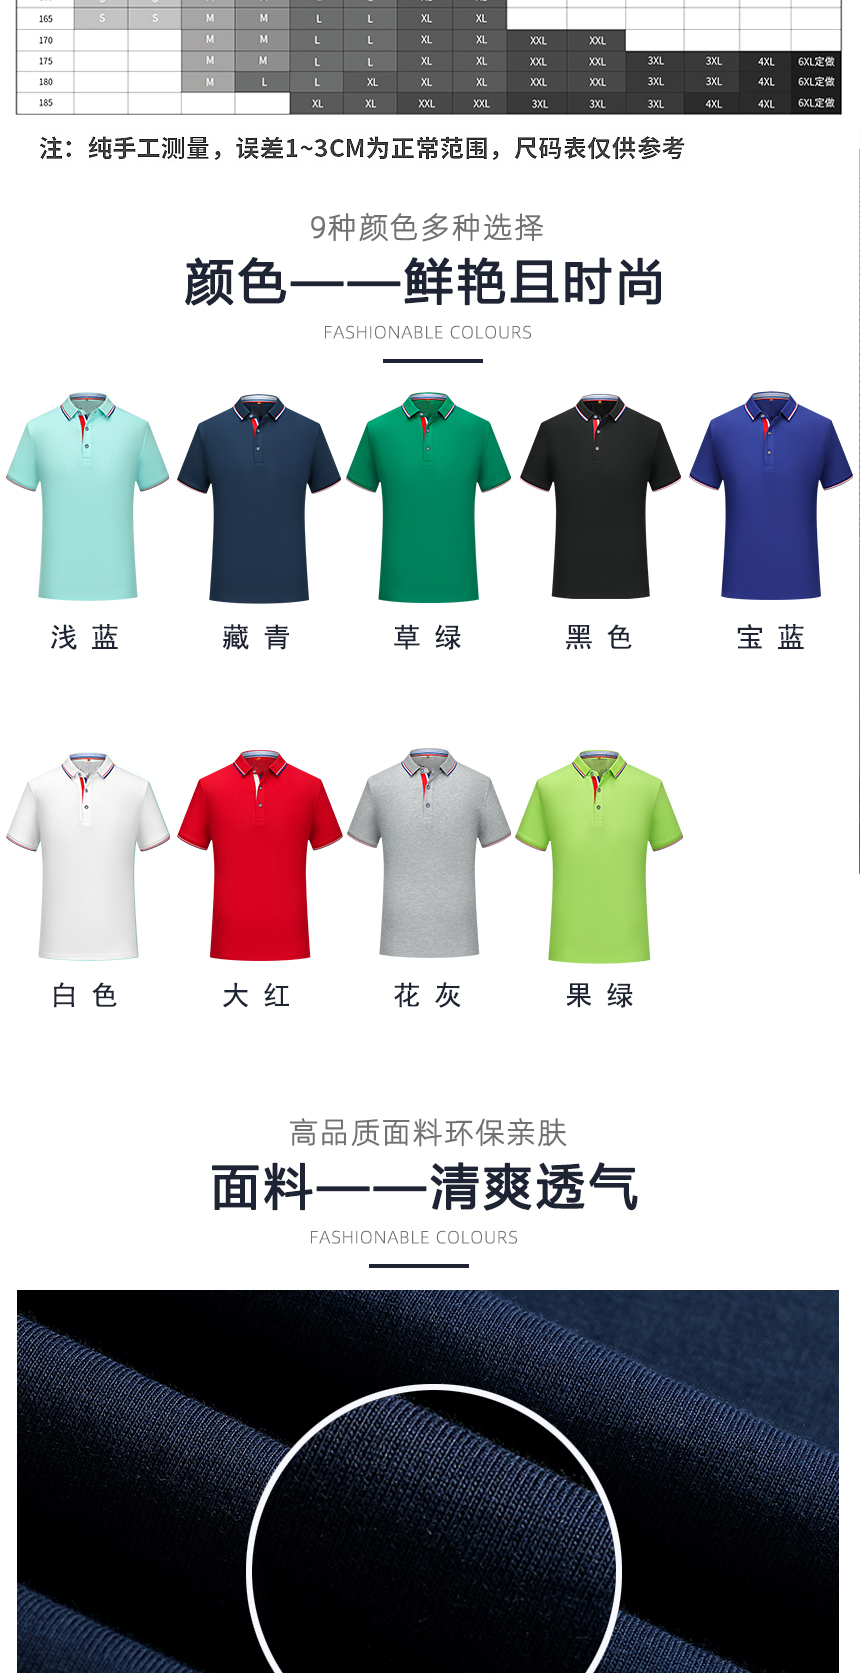 高档polo衫同款不同颜色款式展示，高档polo衫精选优质面料